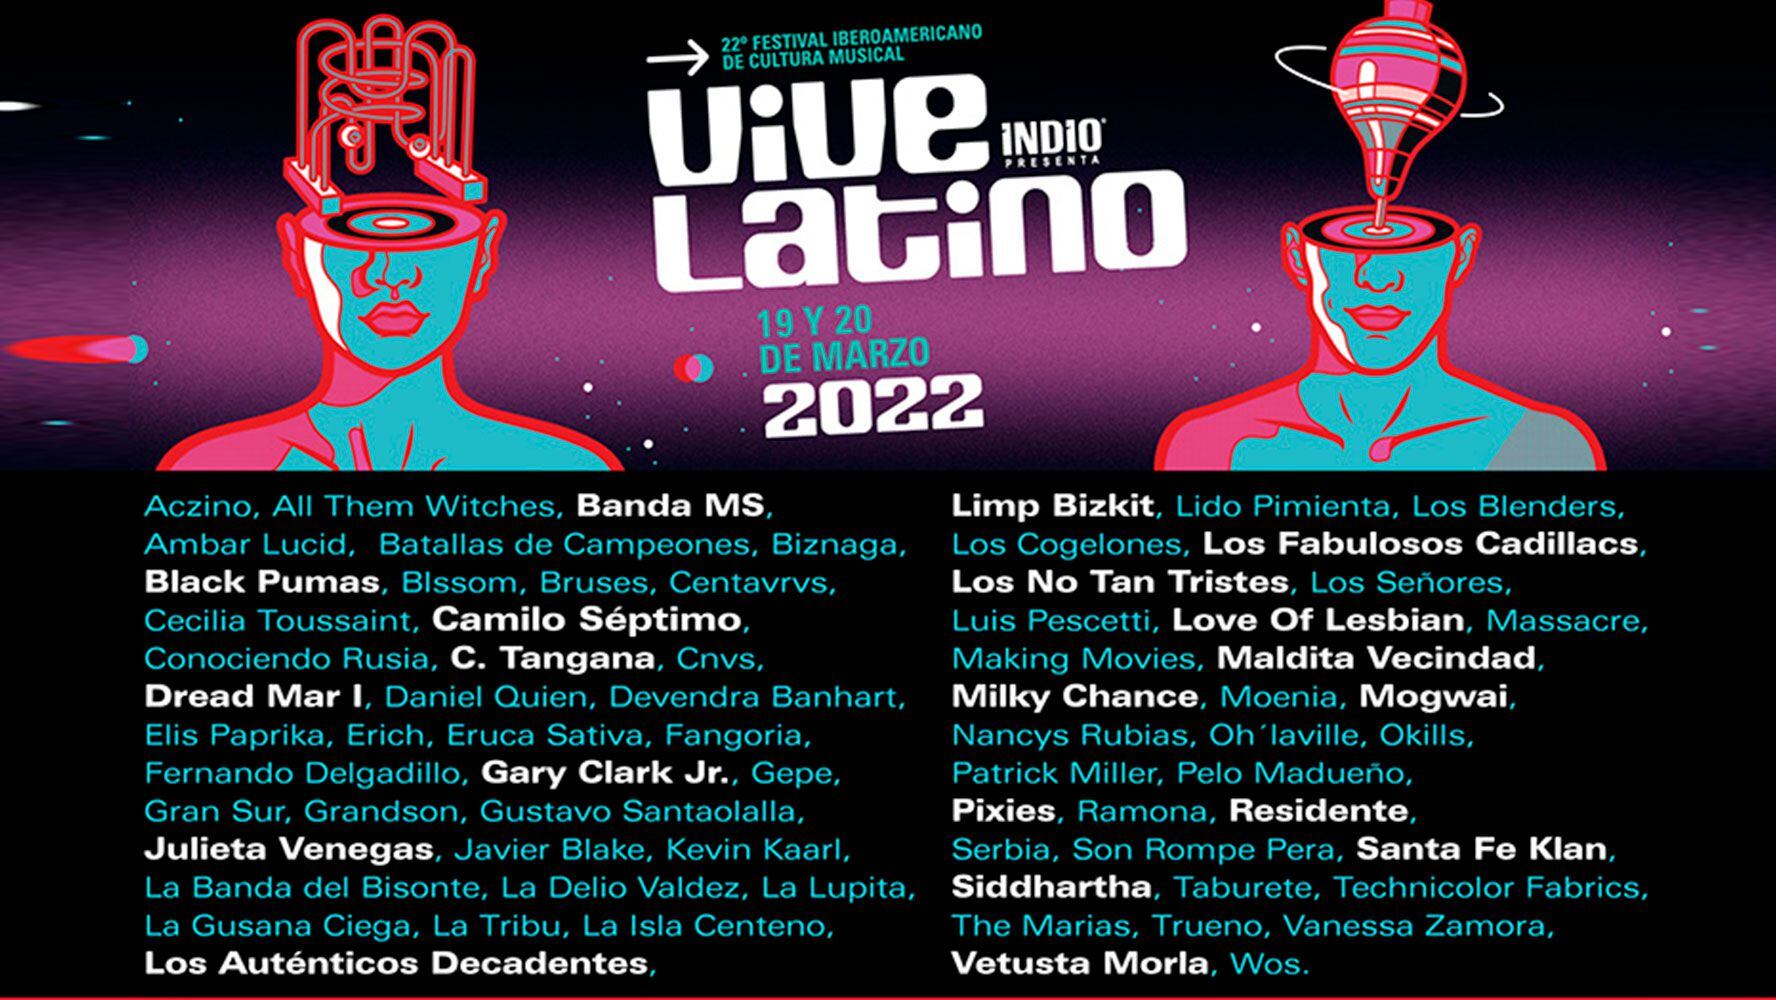 Aczino, Limp Bizkit, Lido Pimienta y Julieta Venegas: Así será la cartelera del Vive Latino 2022